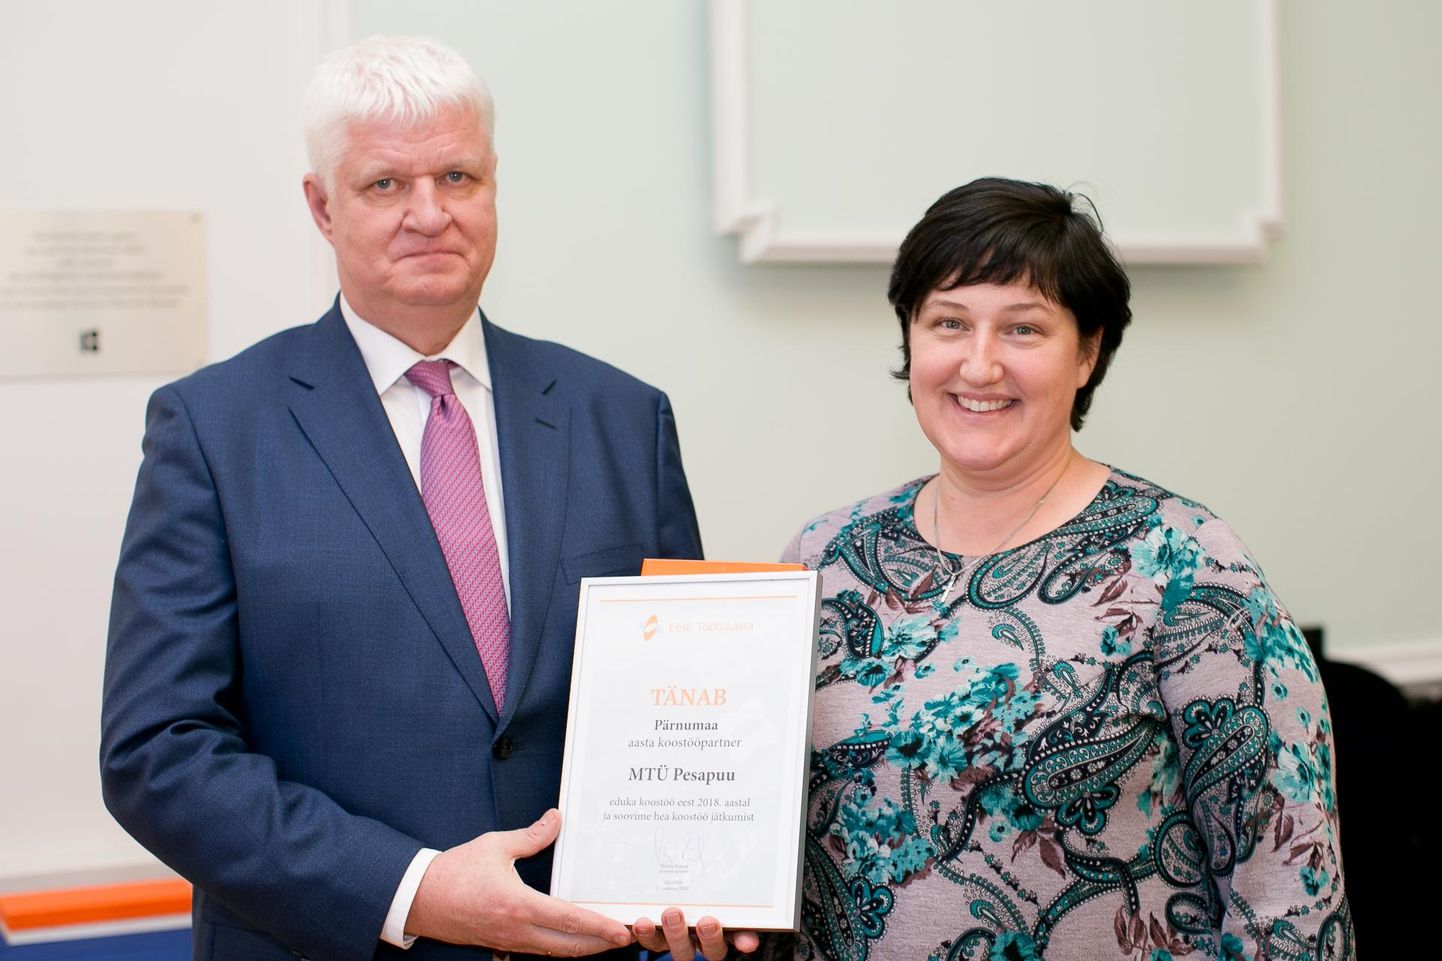 Töötukassa aasta koostööpartneriks osutus MTÜ Pesapuu. Pildil võtab tunnustust vastu juhatuse liige Evelyn Eichhorst.